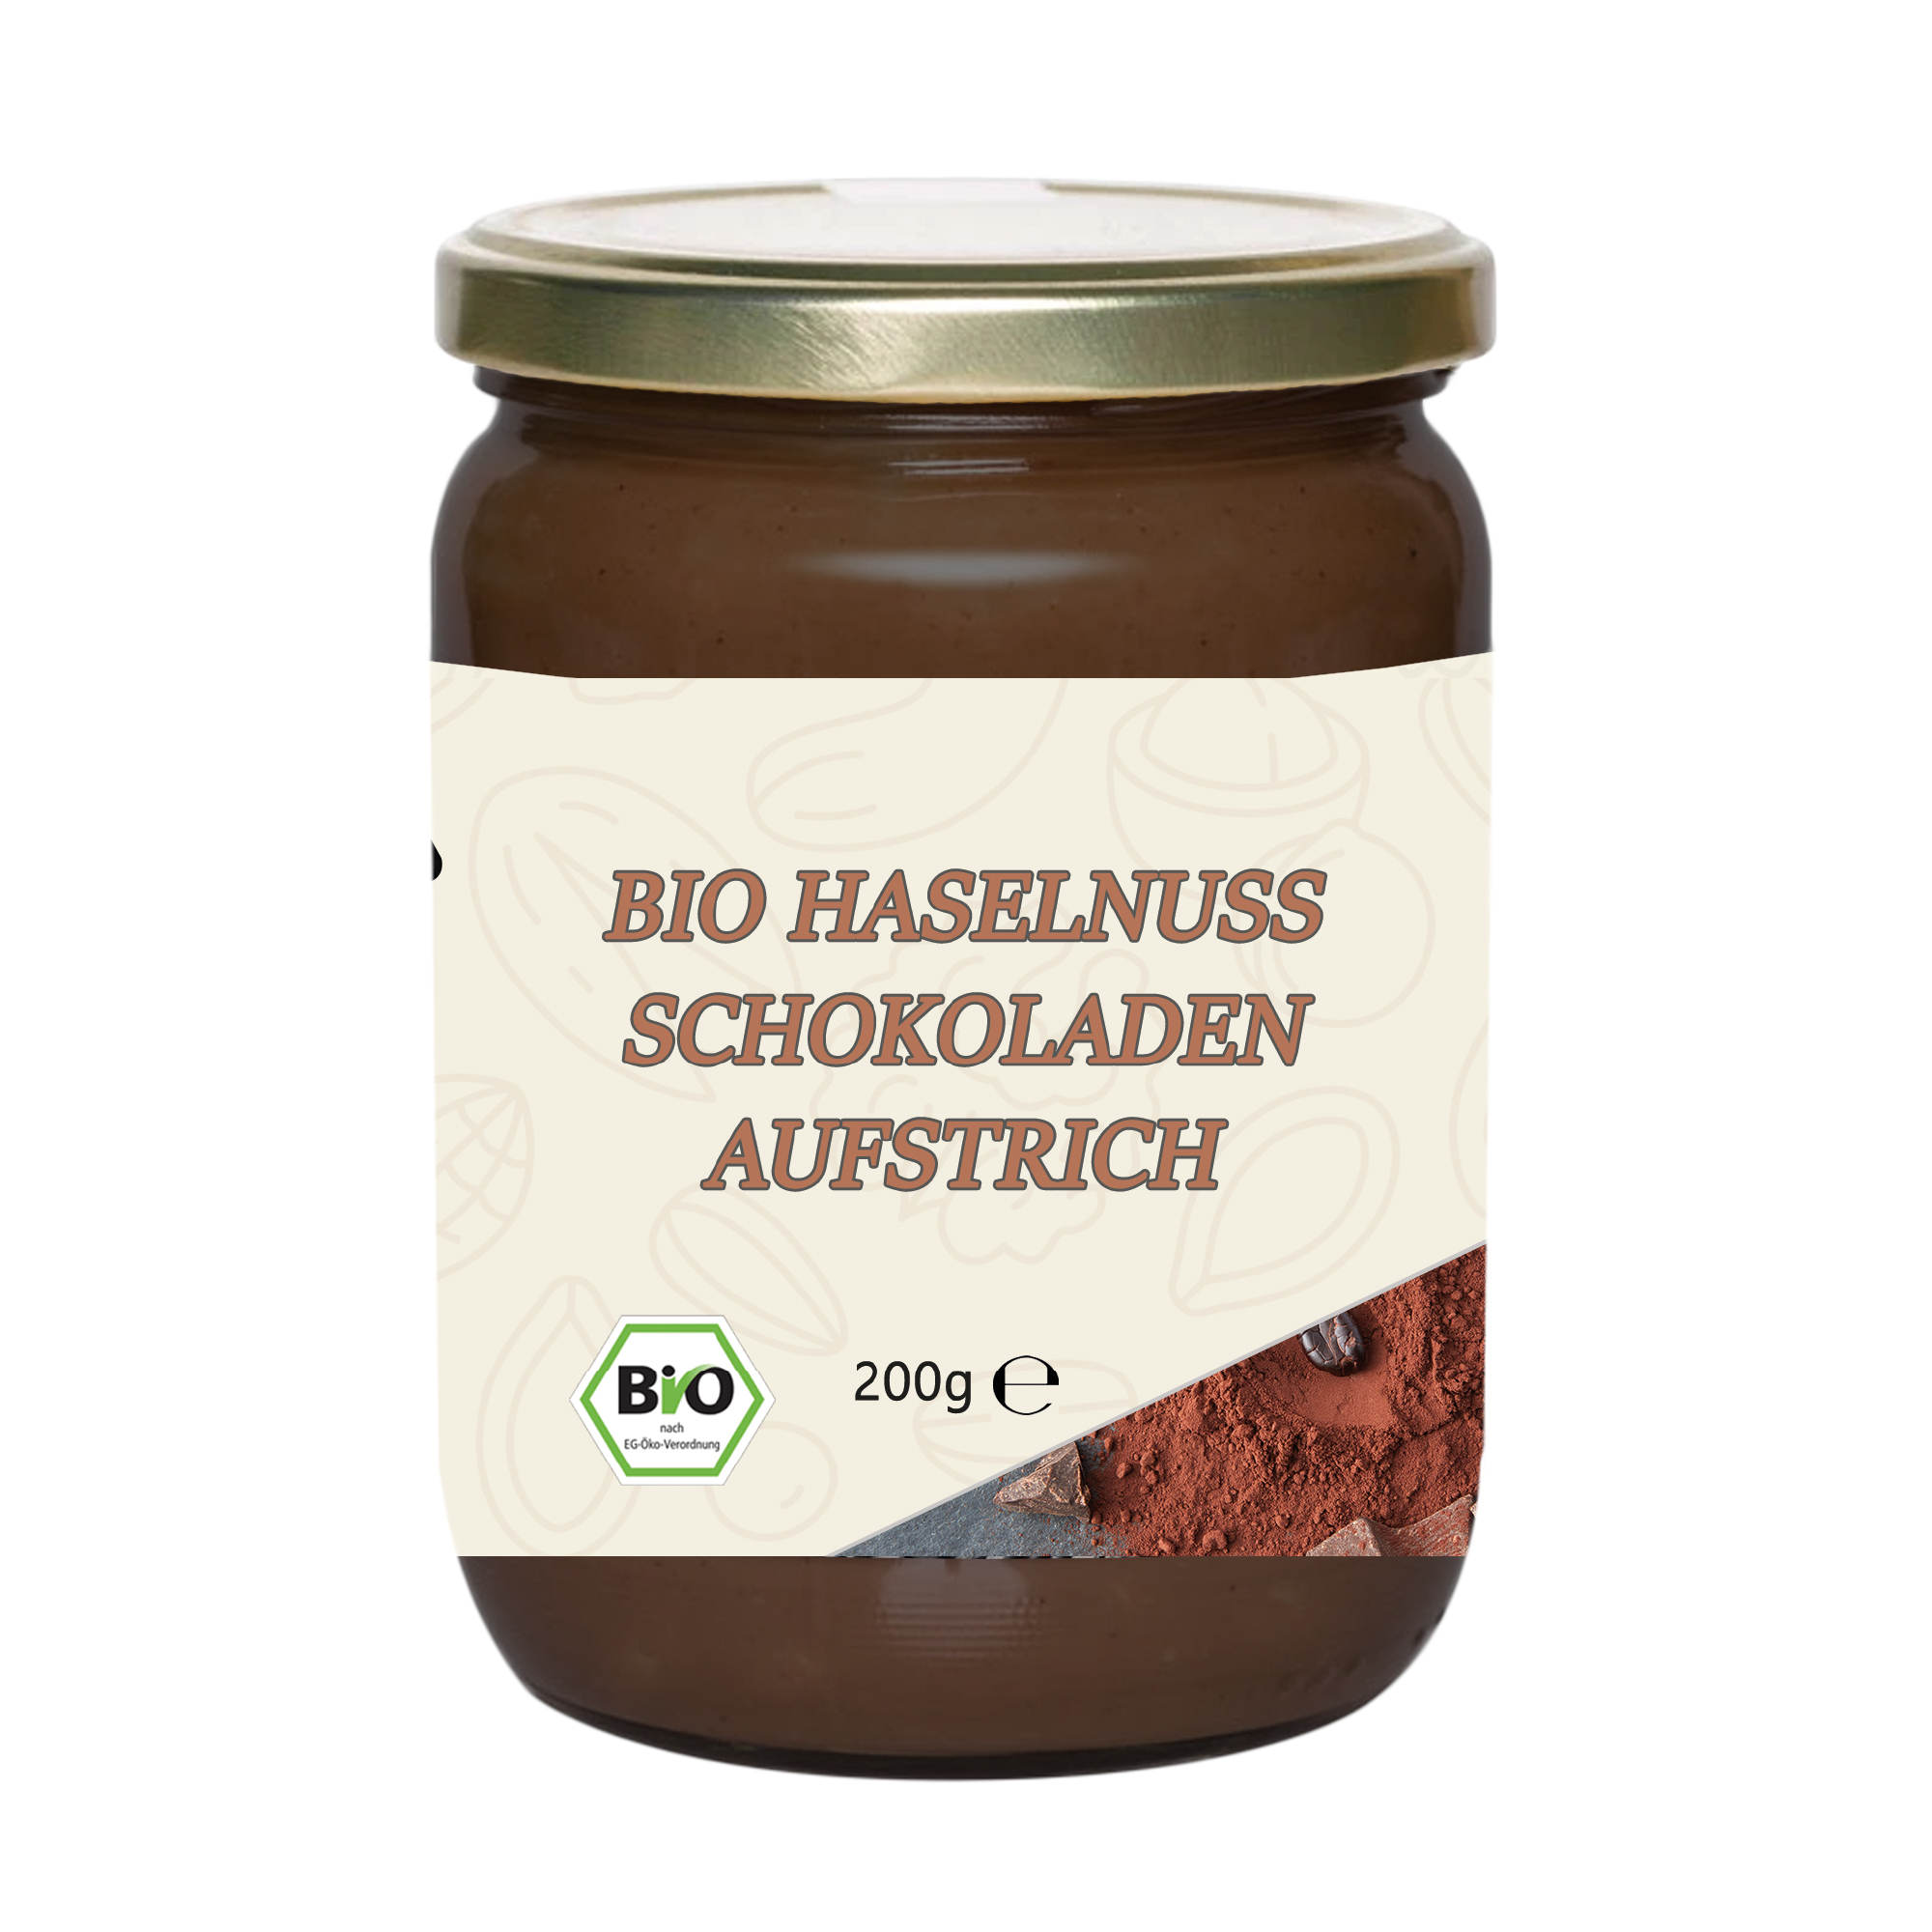 Mynatura Bio Haselnuss Schokoladen Aufstrich 200g Glas | Mus | Früchte ...